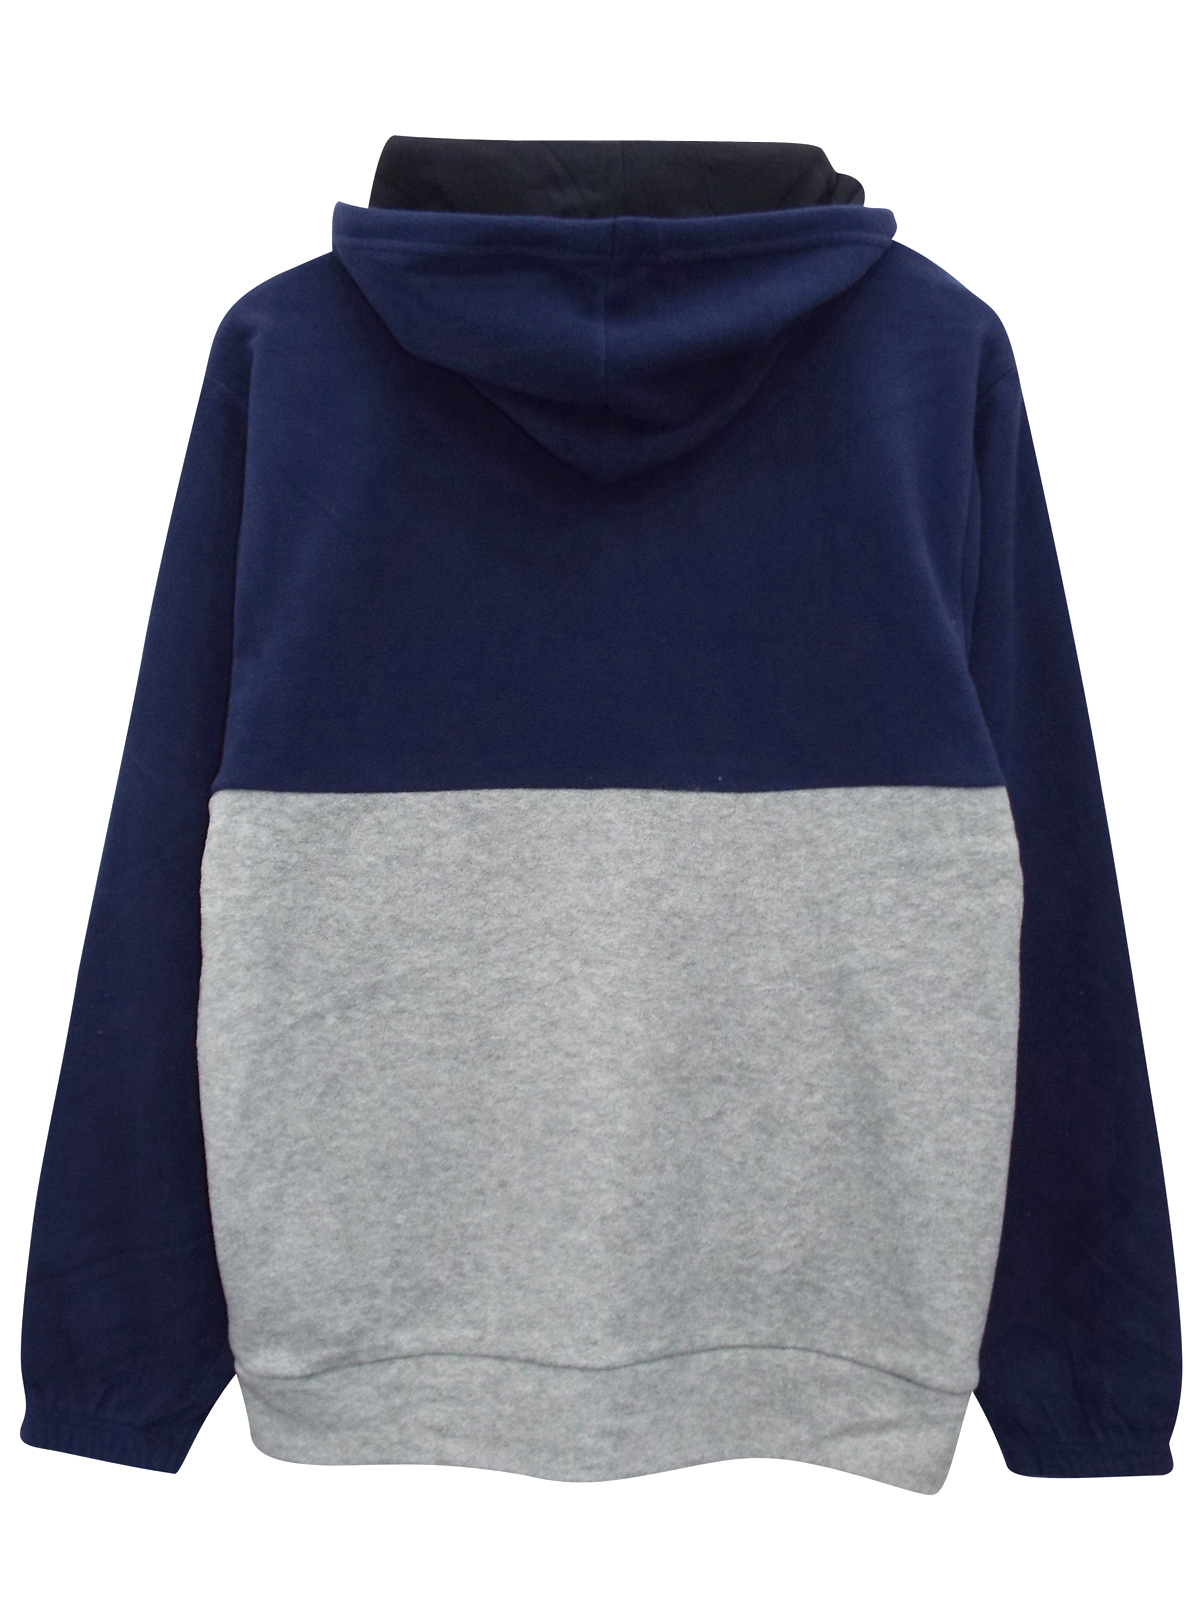 Regatta - - Regatta NAVY/GREY Zip Through Hooded Sweatshirt - Size Medium